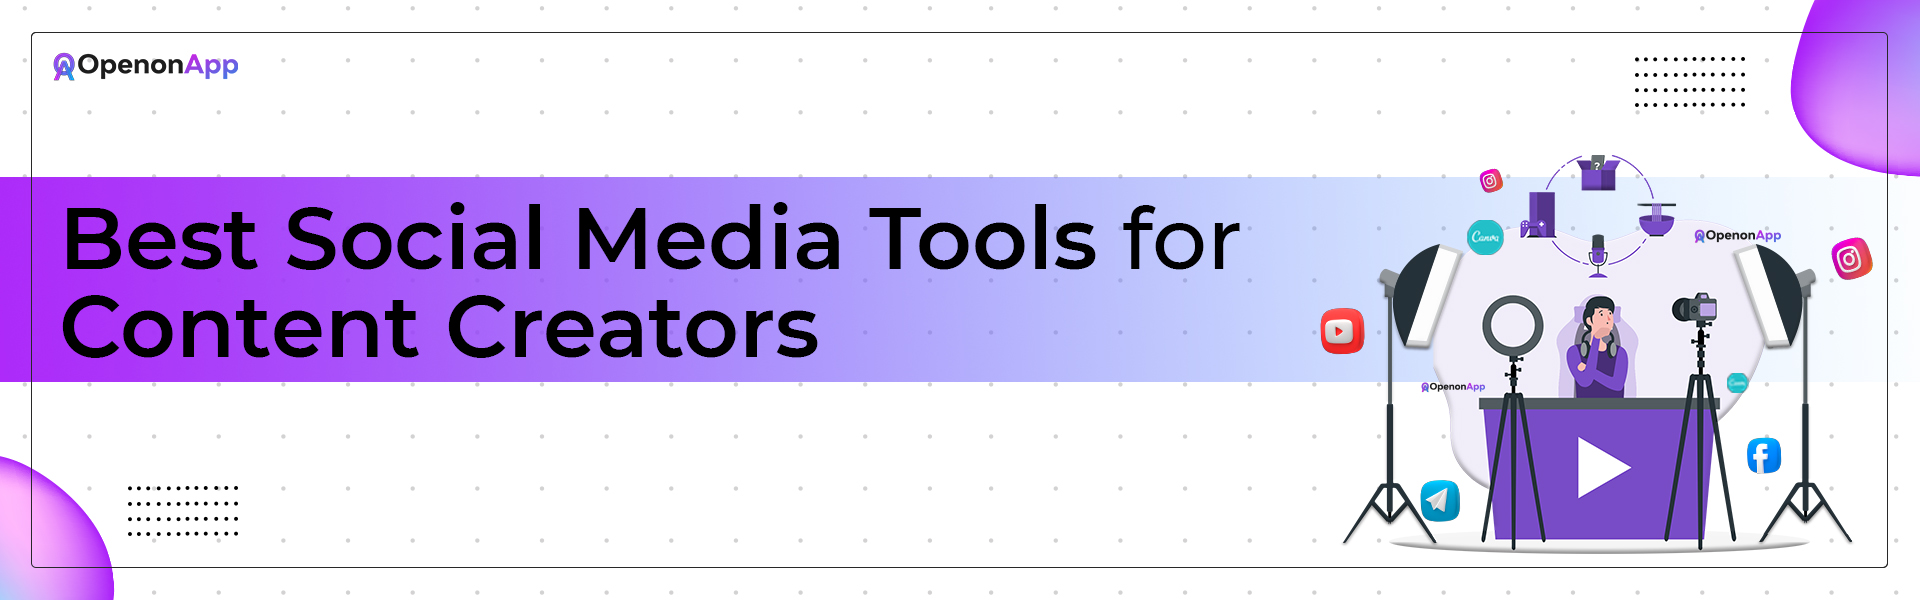 social media tools for content creators